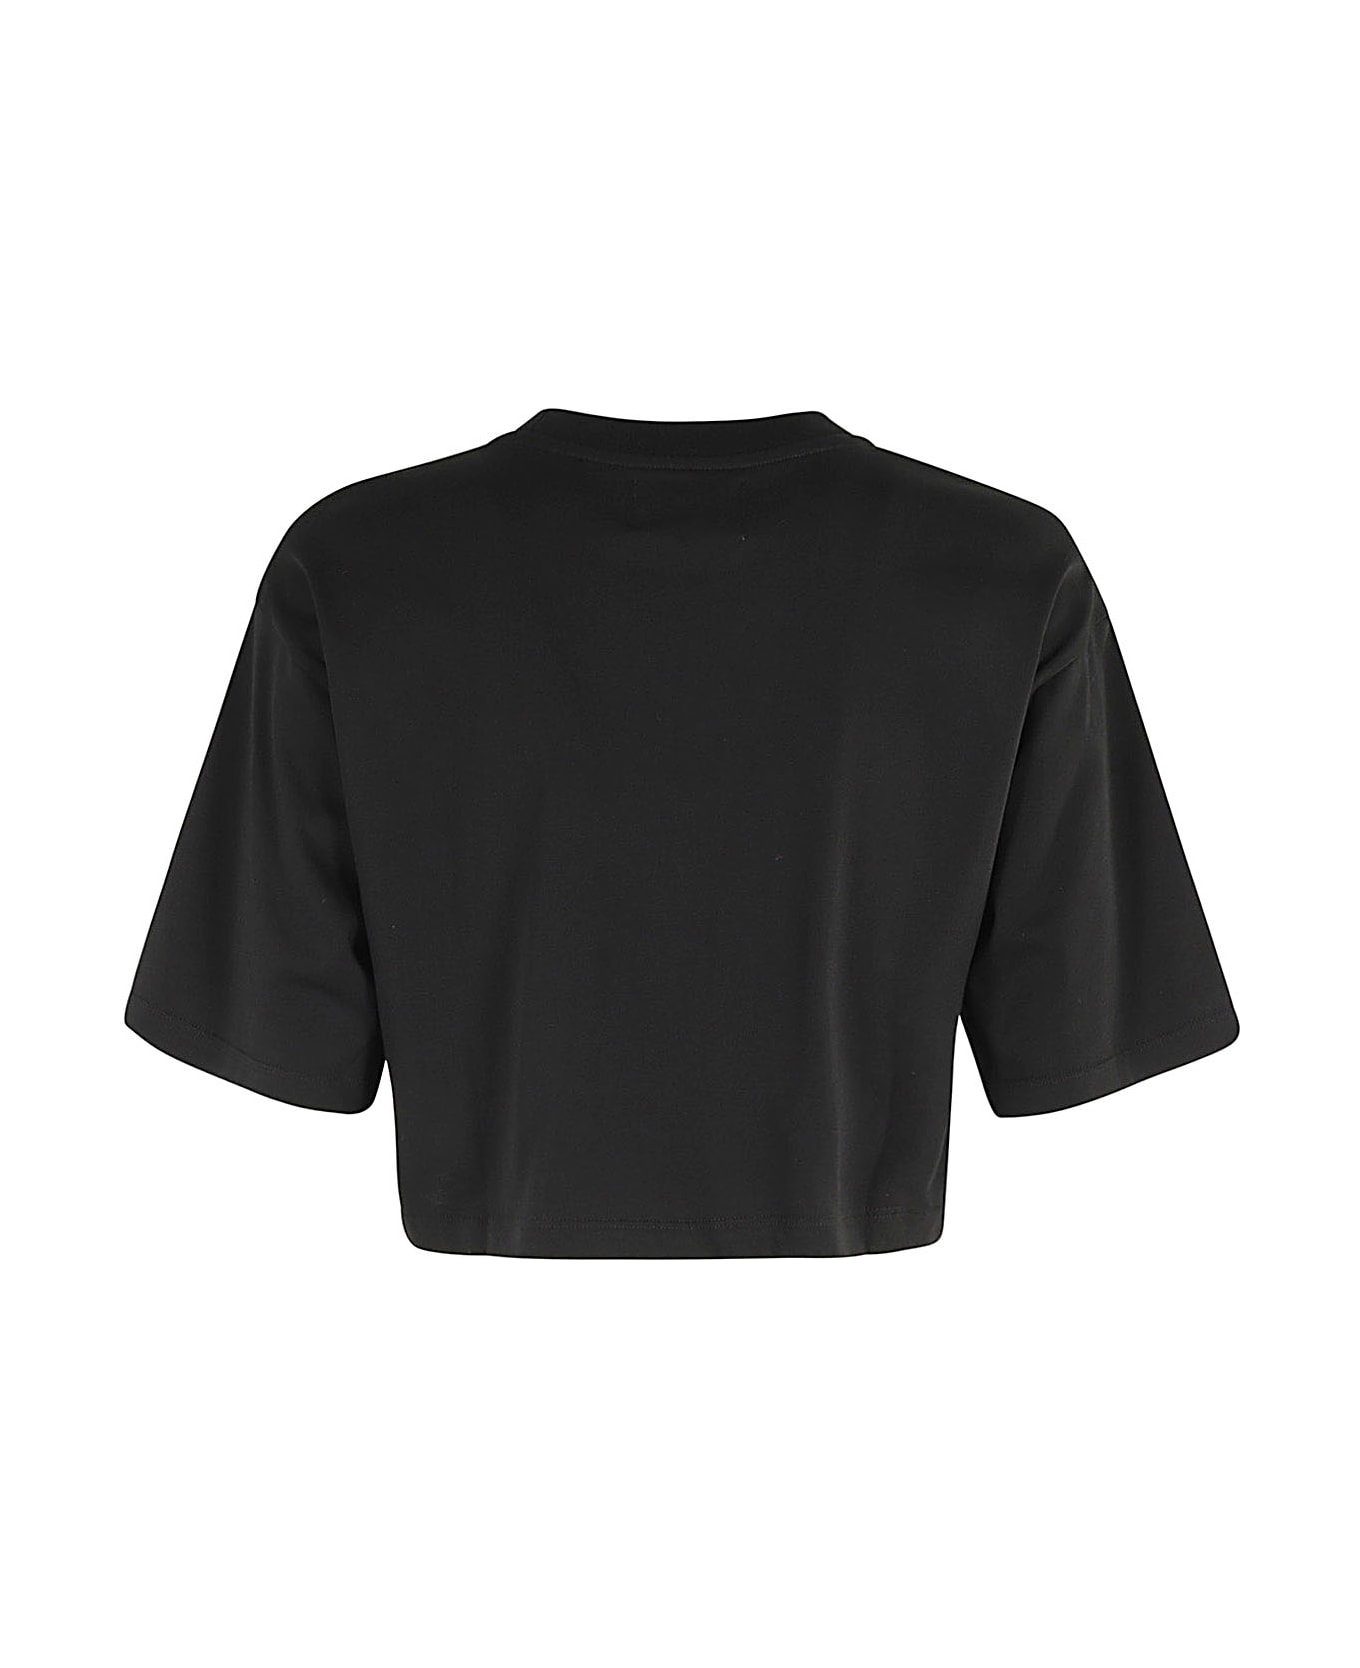 Loulou Studio Cropped Tshirt - Black Tシャツ